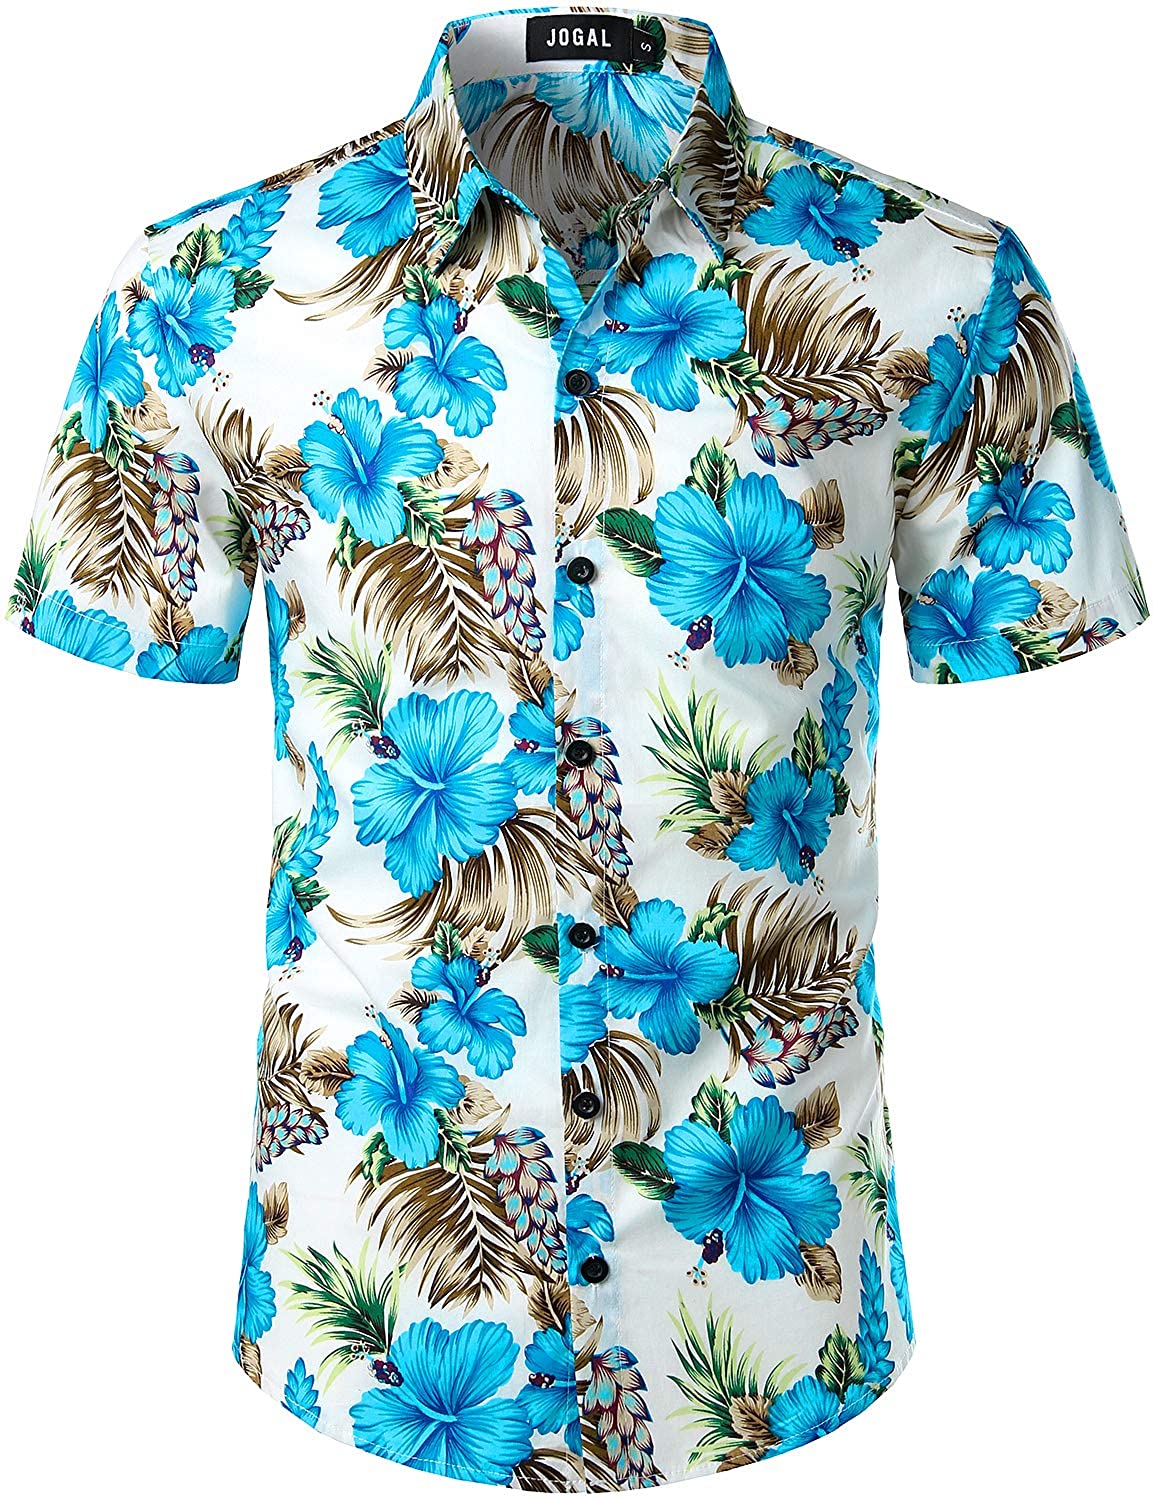 diseño floral JOGAL Camisa hawaiana de manga corta con botones para verano 